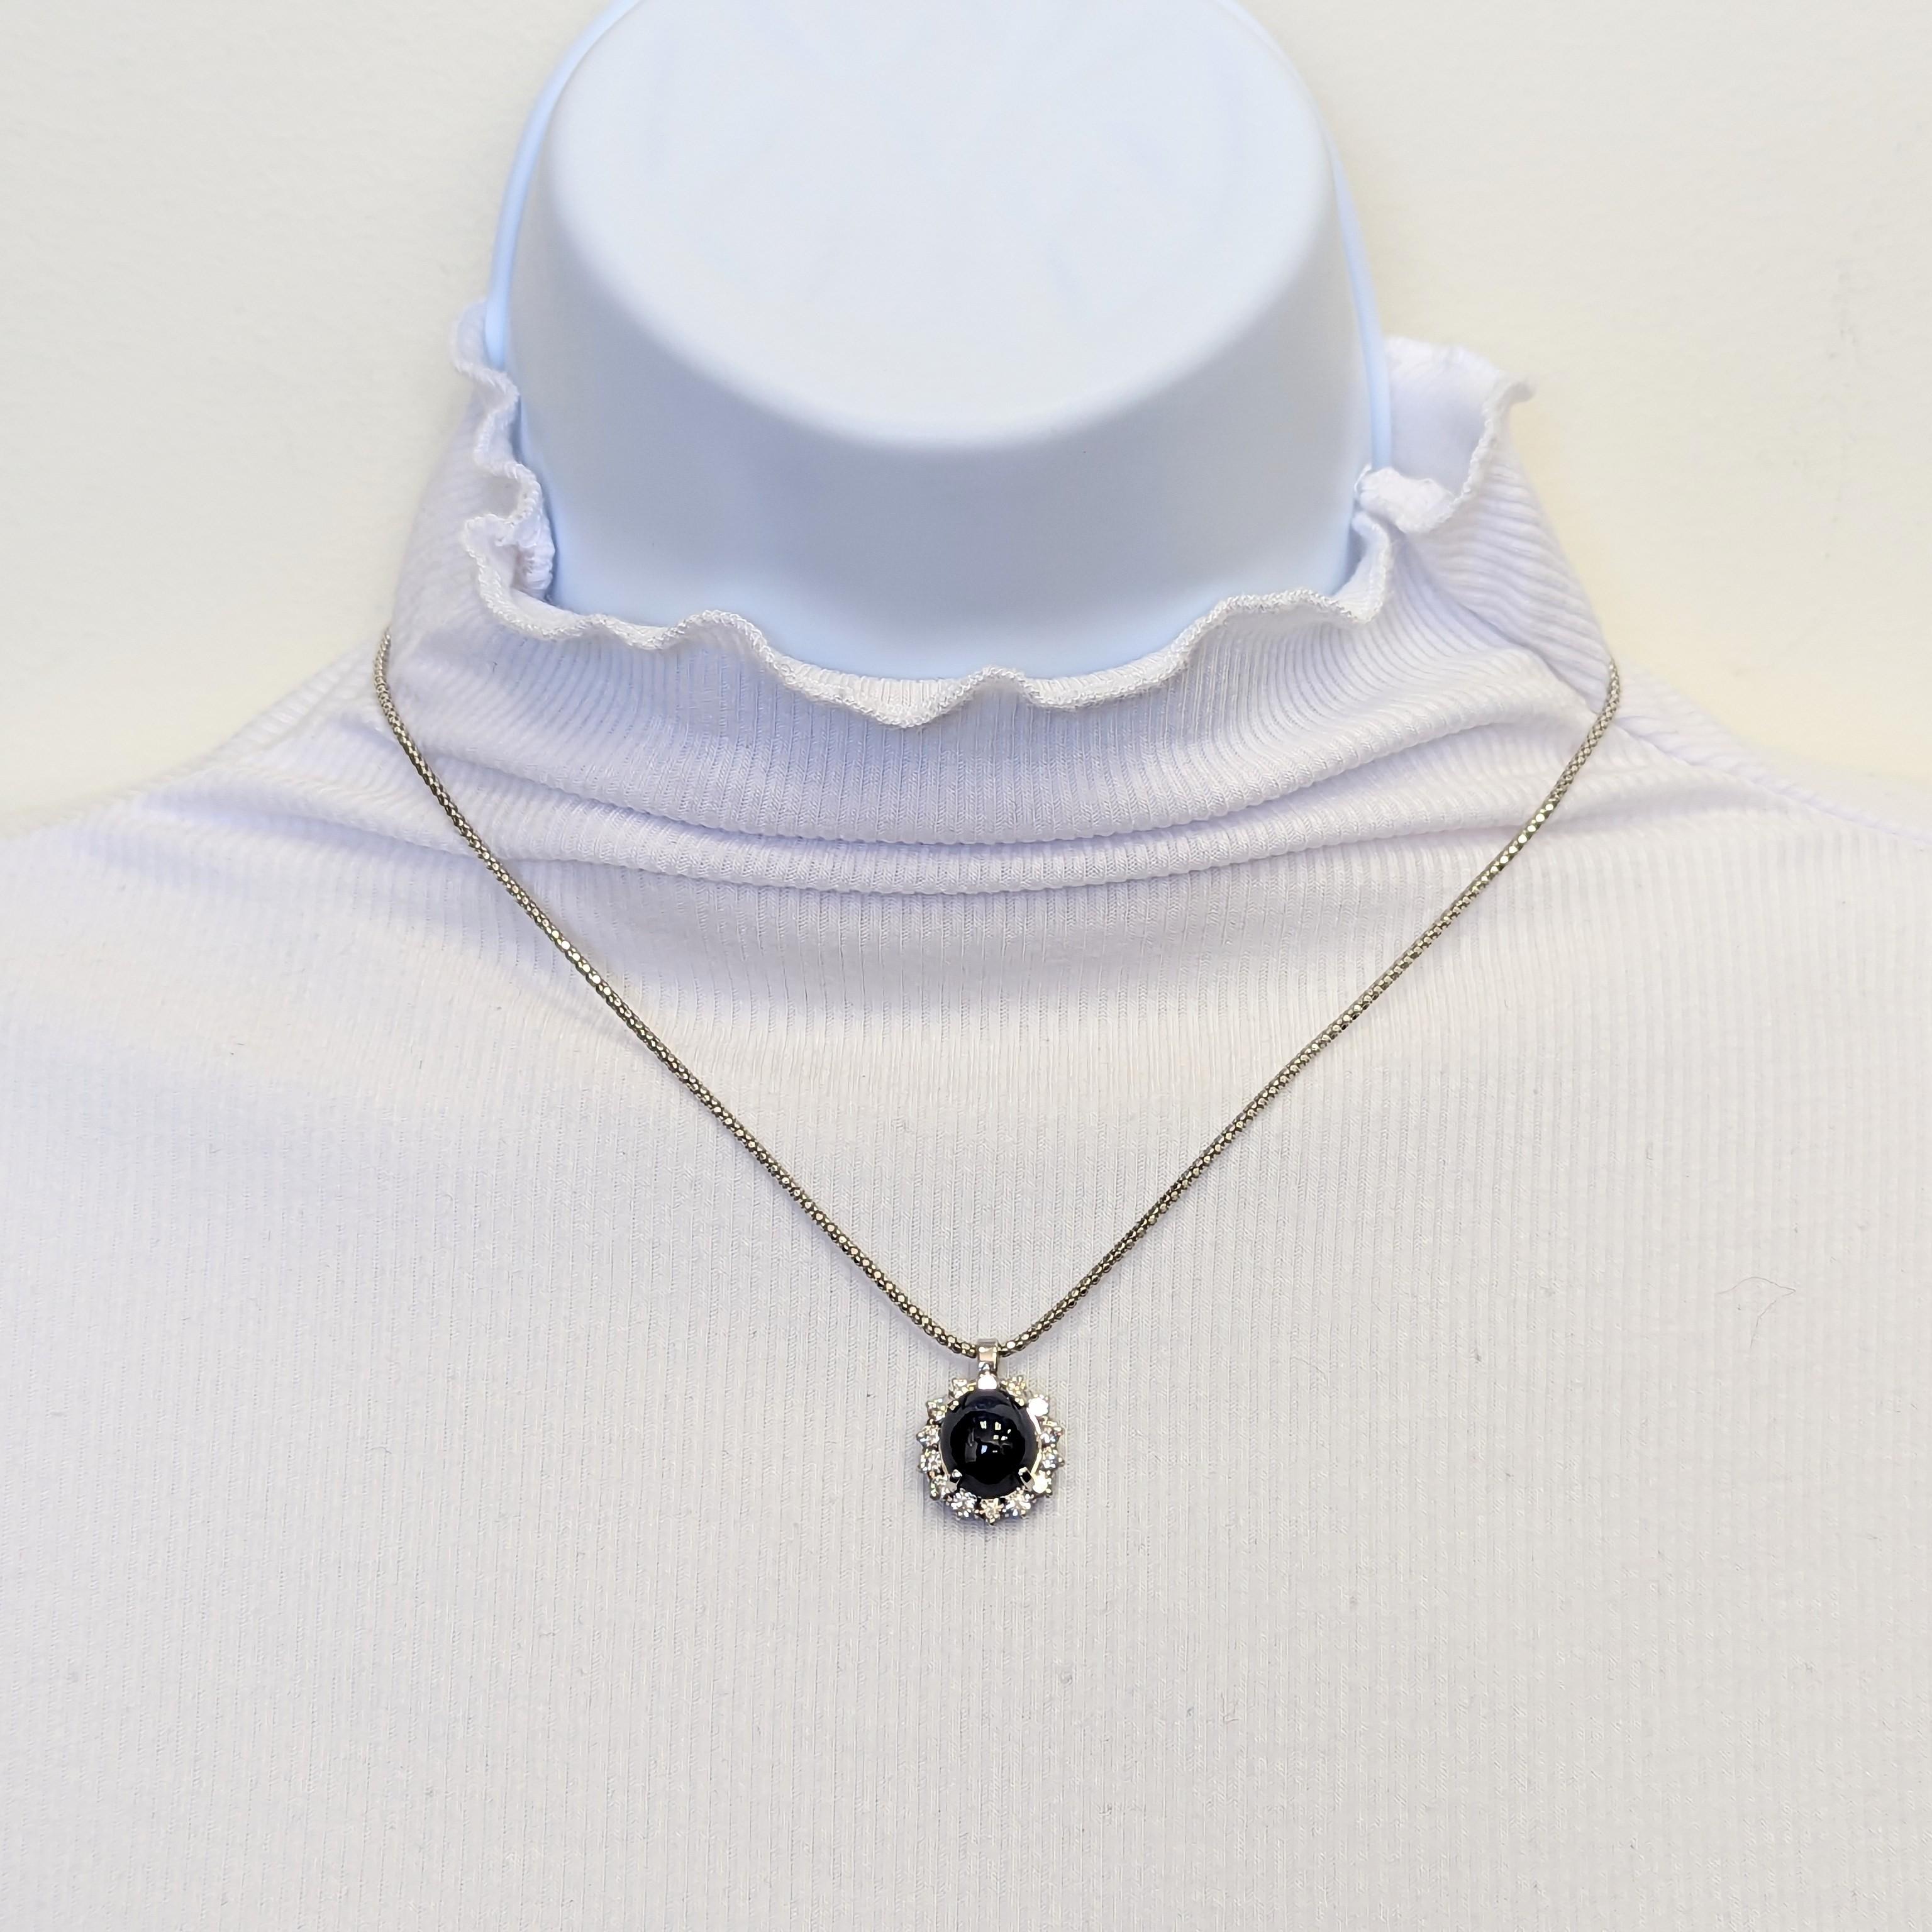 Wunderschöner ovaler blauer Saphir von 8,73 Karat mit runden weißen Diamanten von 0,30 Karat in 18 Karat Weißgold.  Diese 18-Zoll-Halskette hat Charme und Charakter, perfekt für jede Gelegenheit zu tragen!